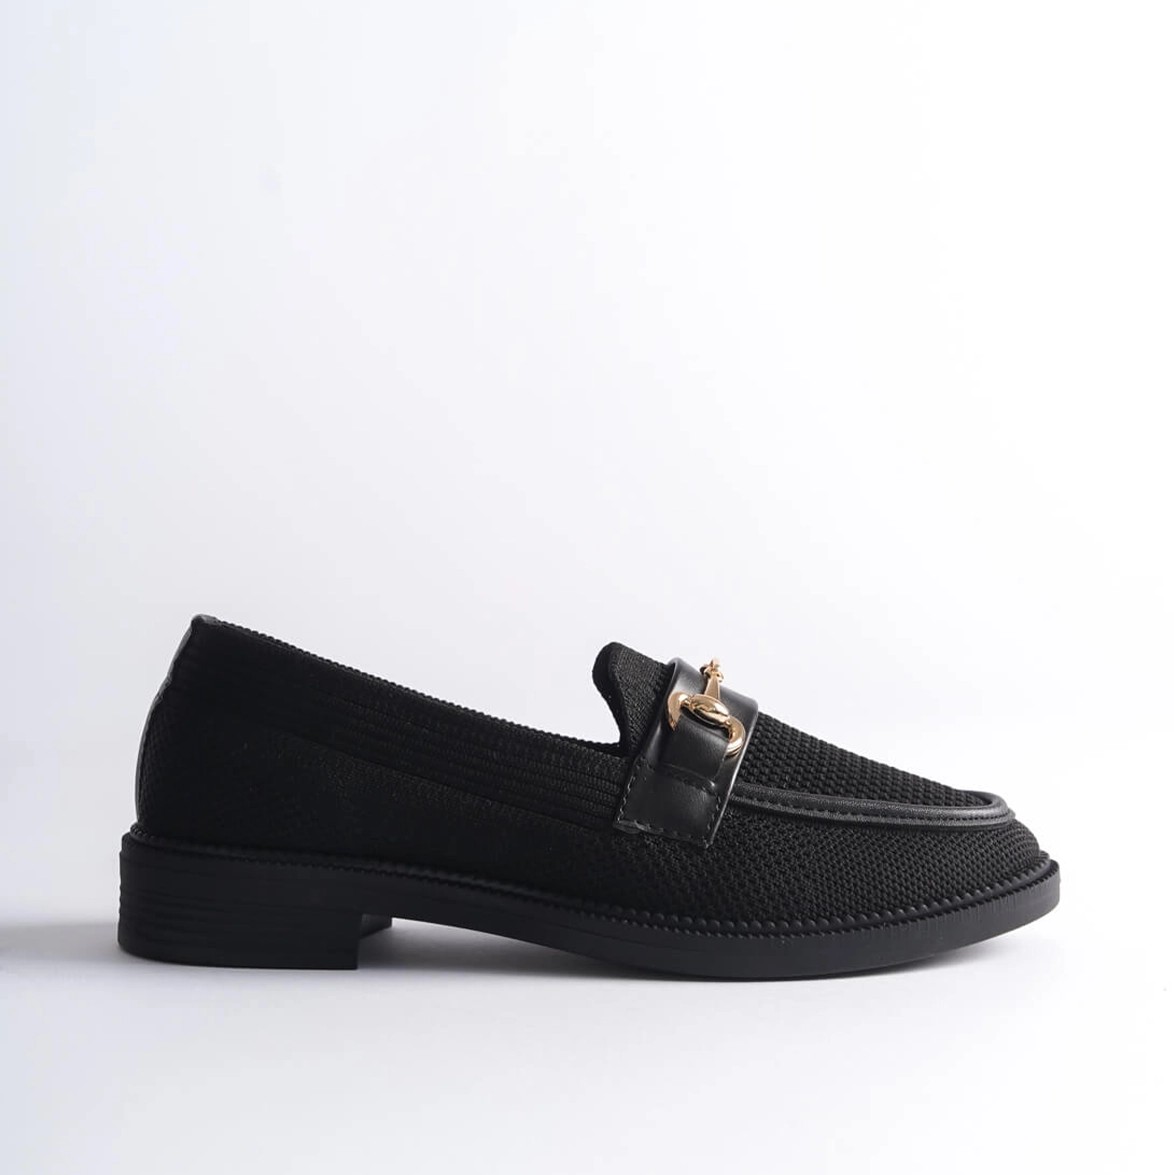 Tekstil Tokalı Loafer Günlük Ayakkabı - Siyah